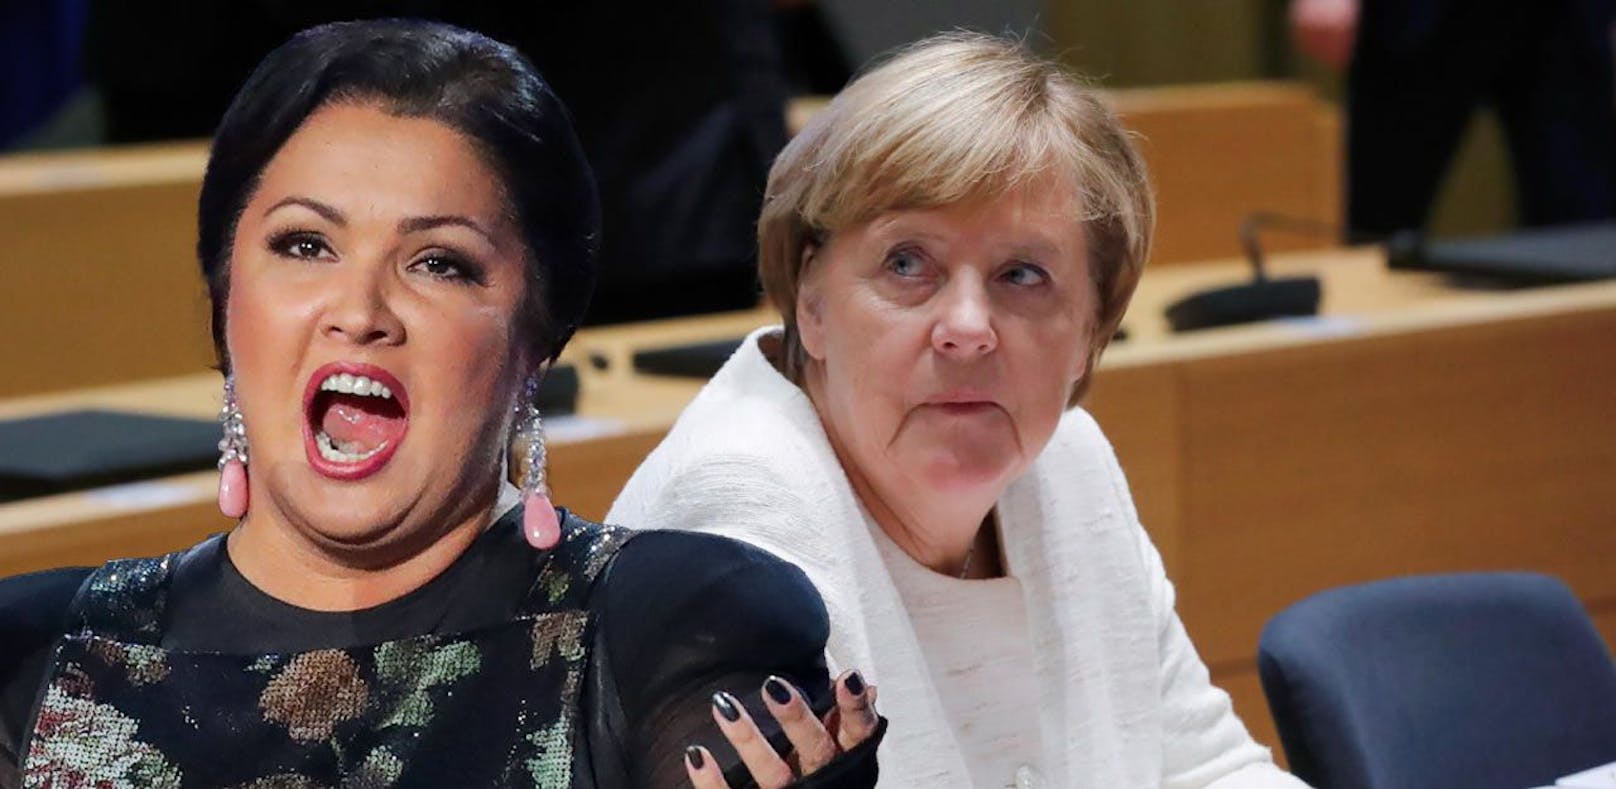 "Verurteile ich" – Merkel will Netrebko nicht einladen